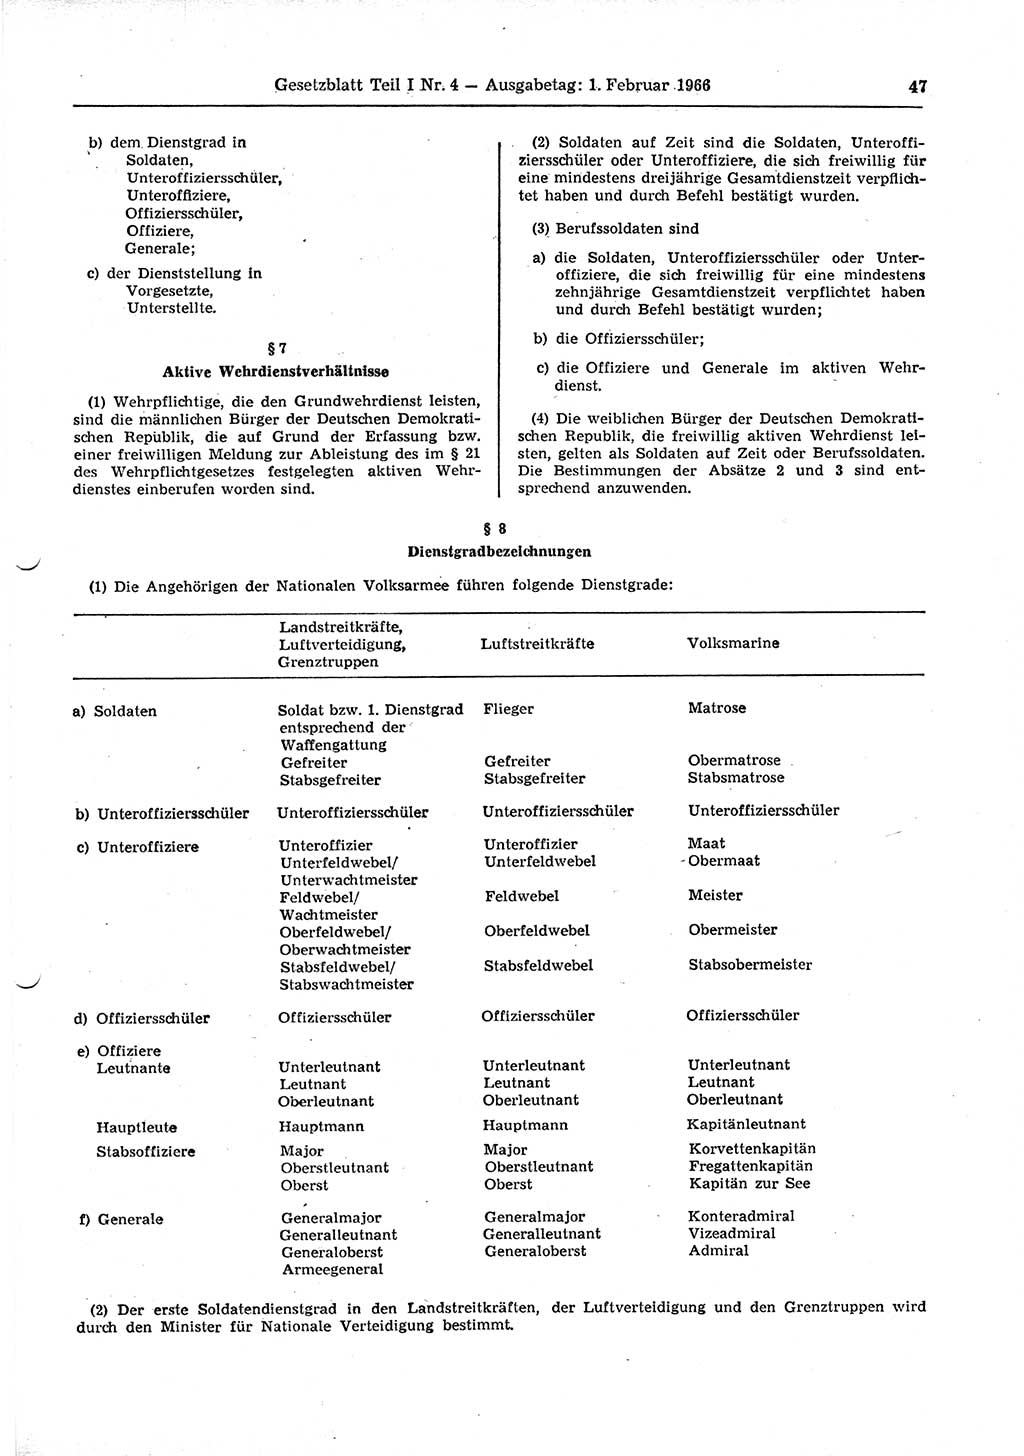 Gesetzblatt (GBl.) der Deutschen Demokratischen Republik (DDR) Teil Ⅰ 1966, Seite 47 (GBl. DDR Ⅰ 1966, S. 47)